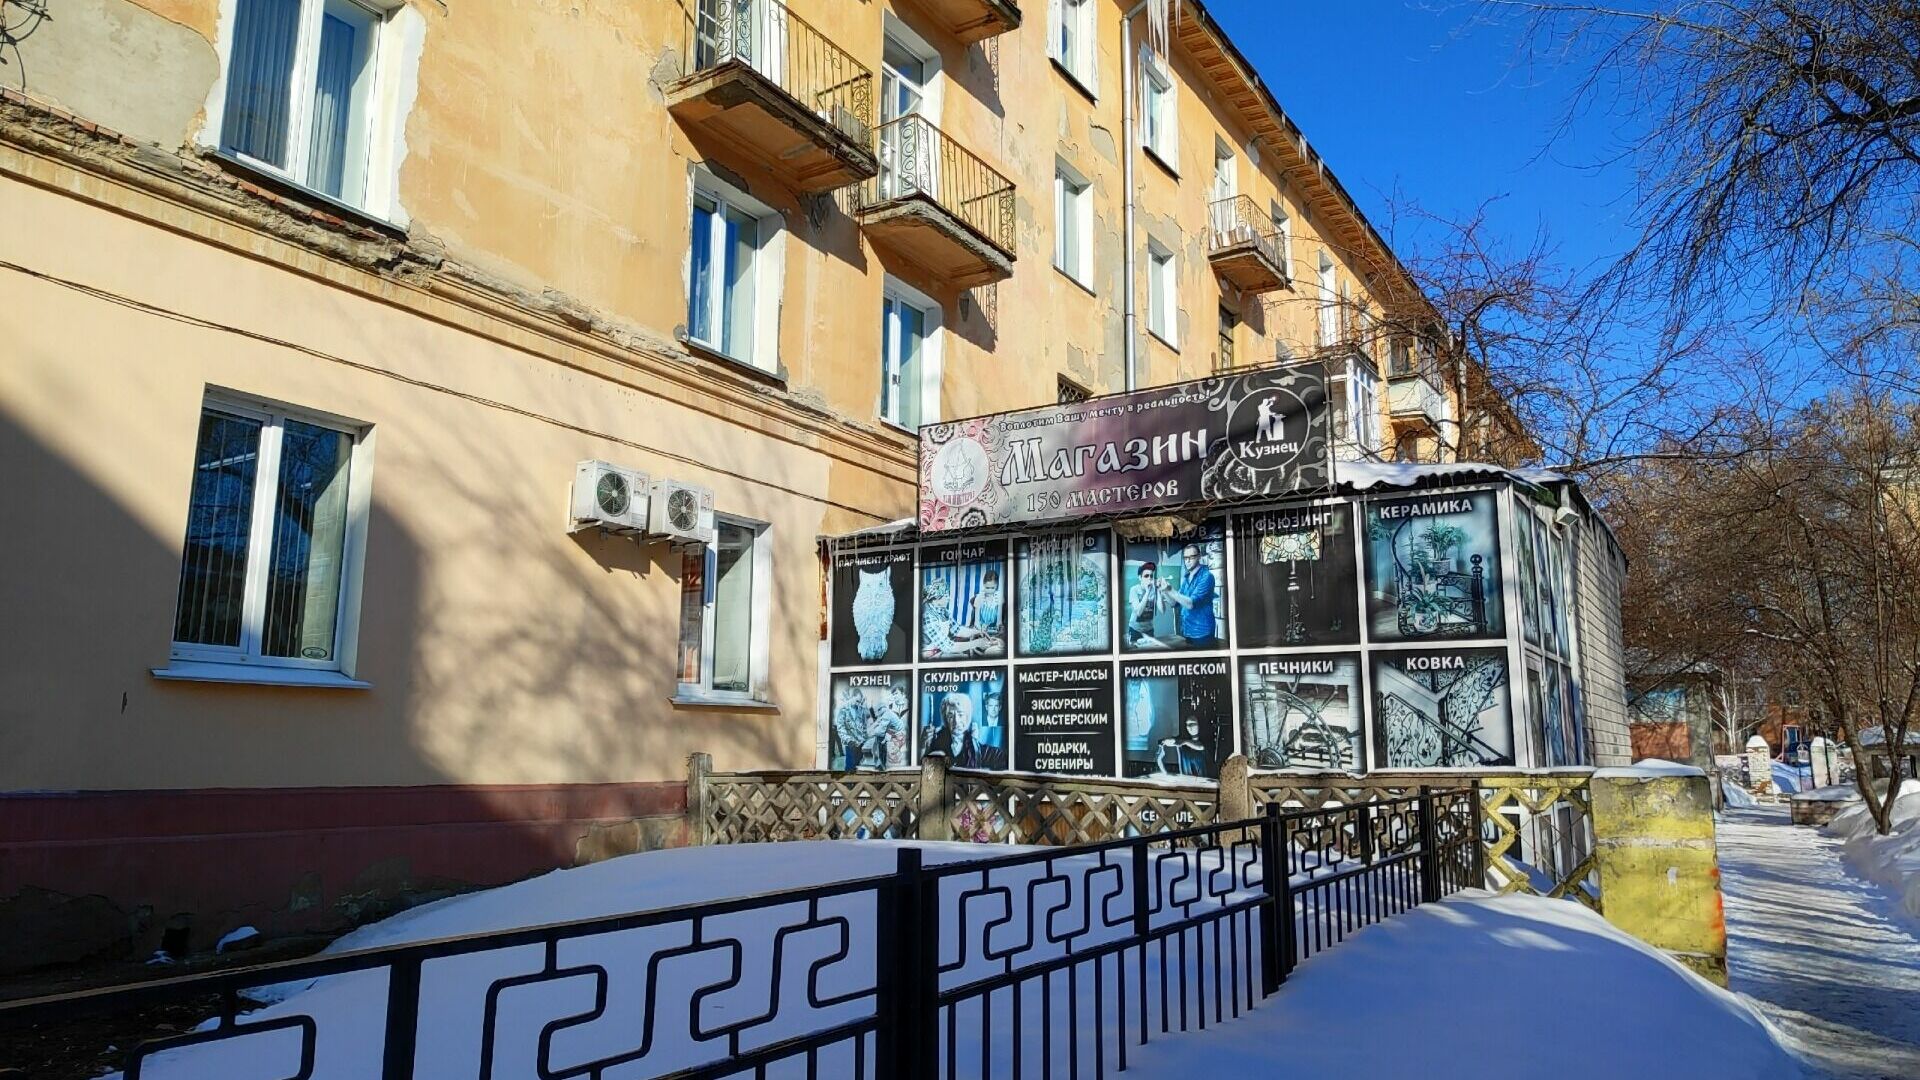 Мастера заняли помещения в четырехэтажном доме на улице Малунцева.